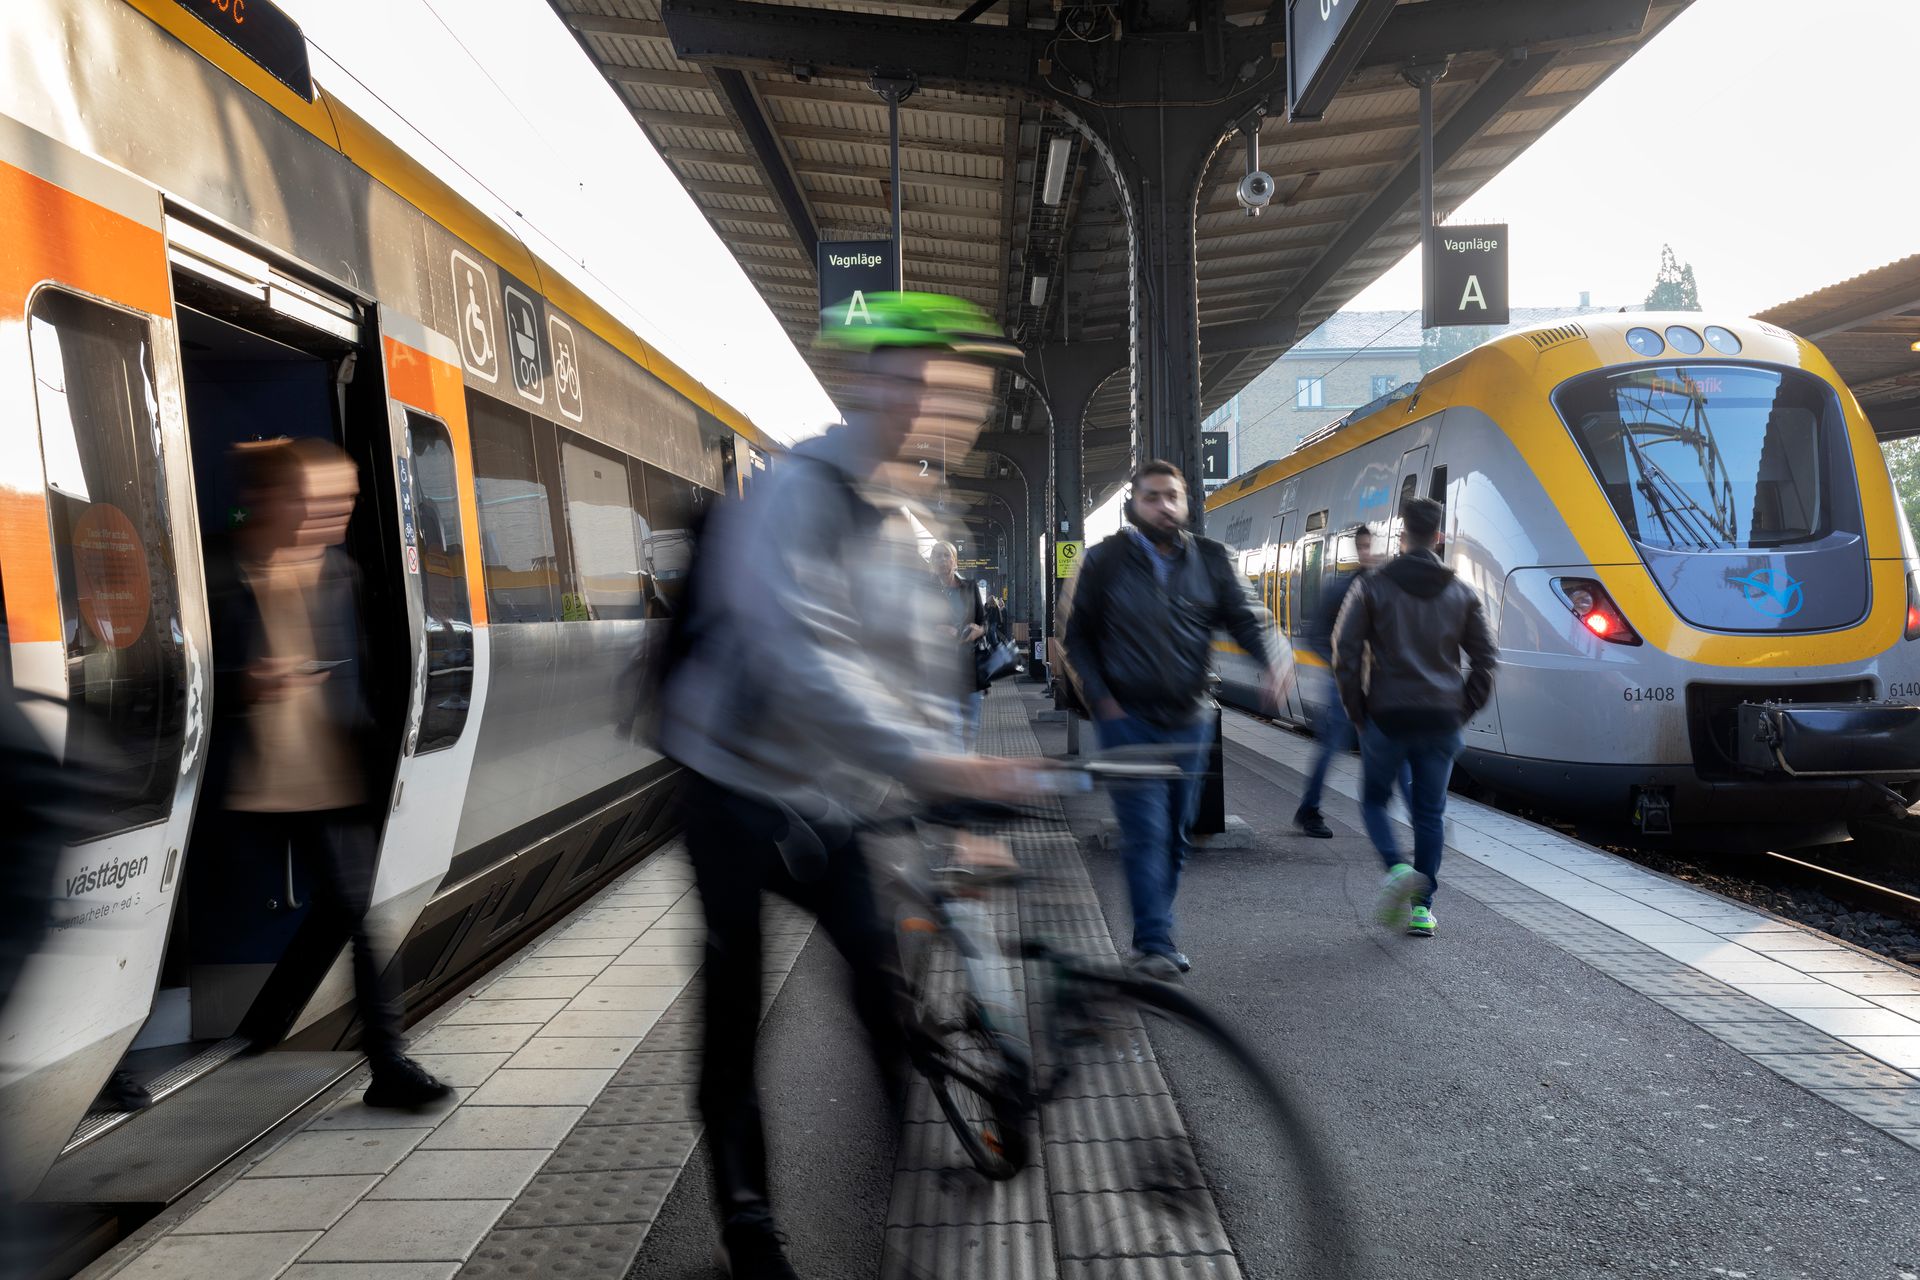 A man on a train platform with a bike.